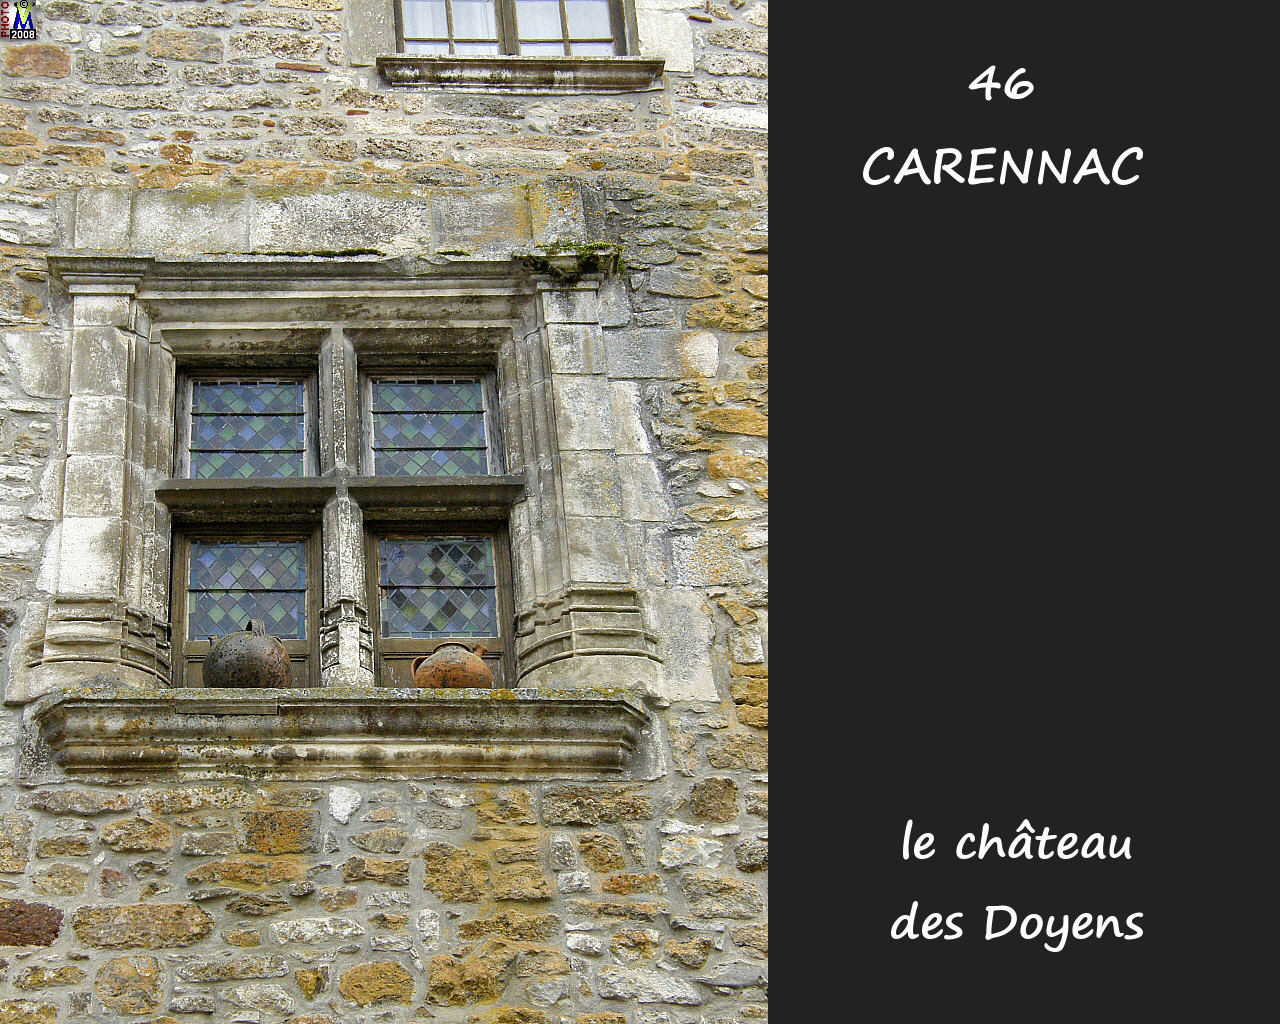 46CARENNAC_chateau_120.jpg